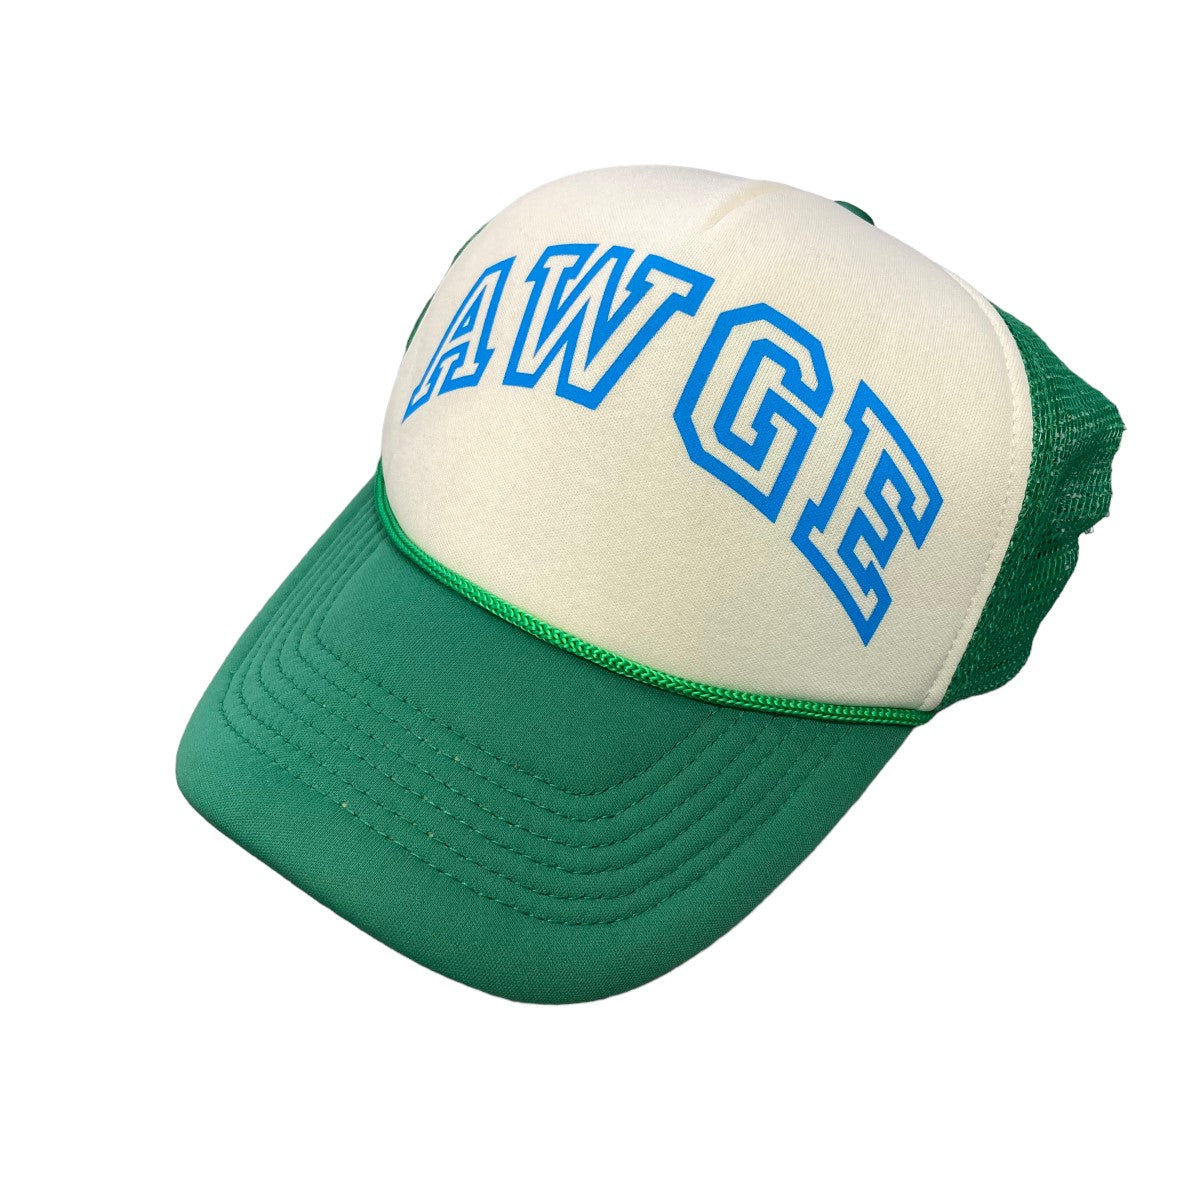 awge(オーグ) 「Logo mesh trucker cap」 ロゴメッシュキャップ 